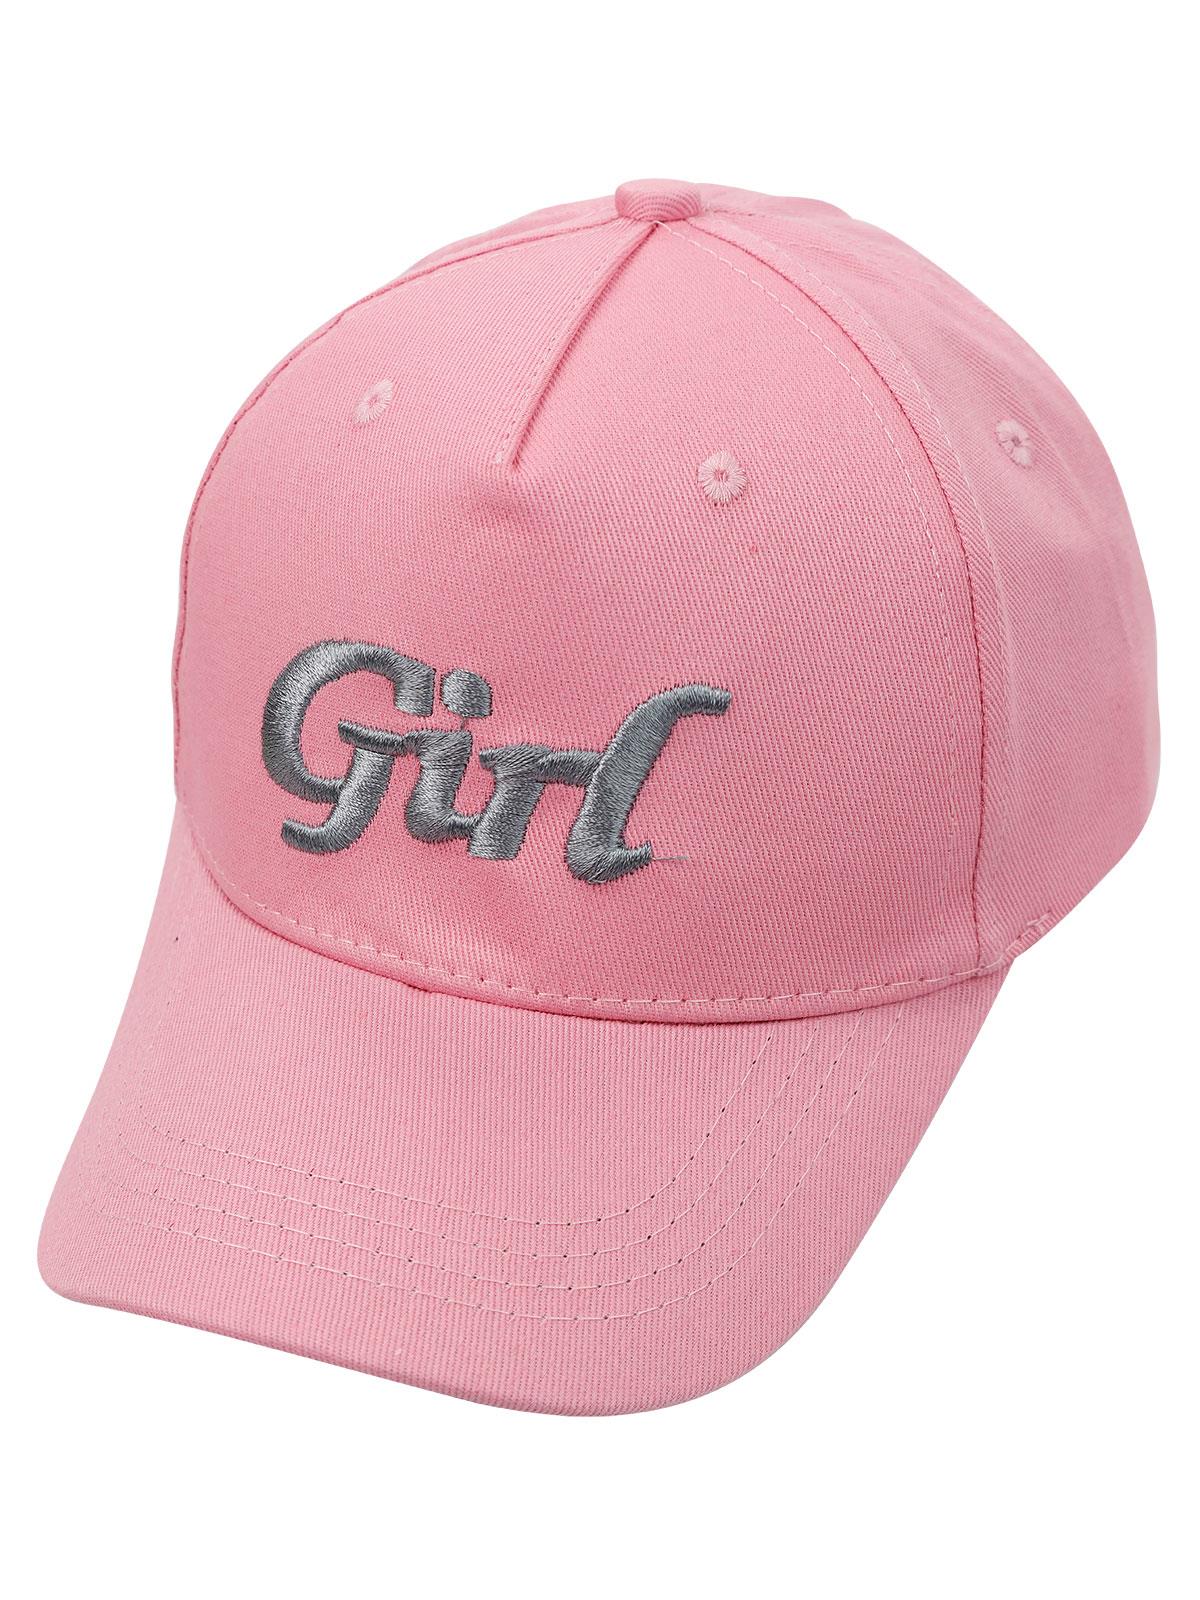 Civil Girls Kız Çocuk Kep Şapka 10-13 Yaş Pembe